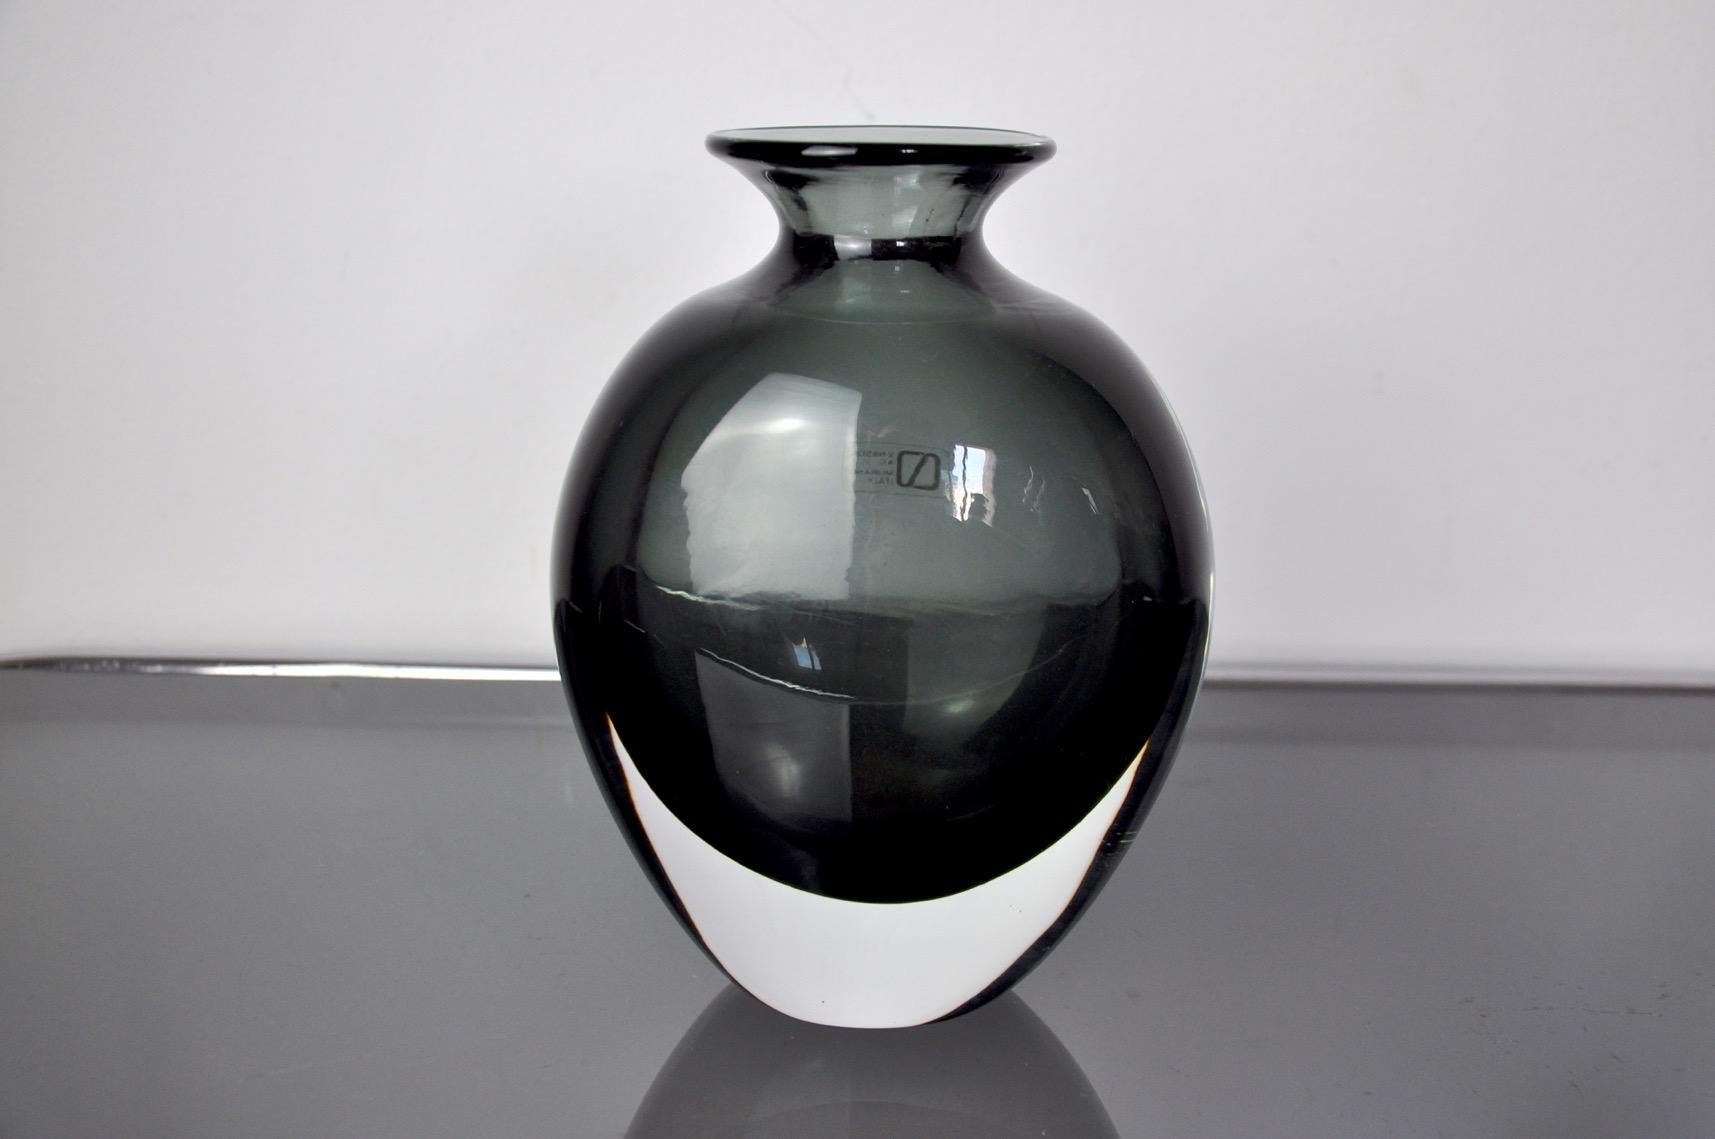 Très beau et rare vase en verre d'art italien noir et transparent nason soufflé à la main.

Ce vase porte encore son Label de la célèbre marque v&c nason et a été fabriqué par carlo et vincenzo nason à Murano, en Italie, dans les années